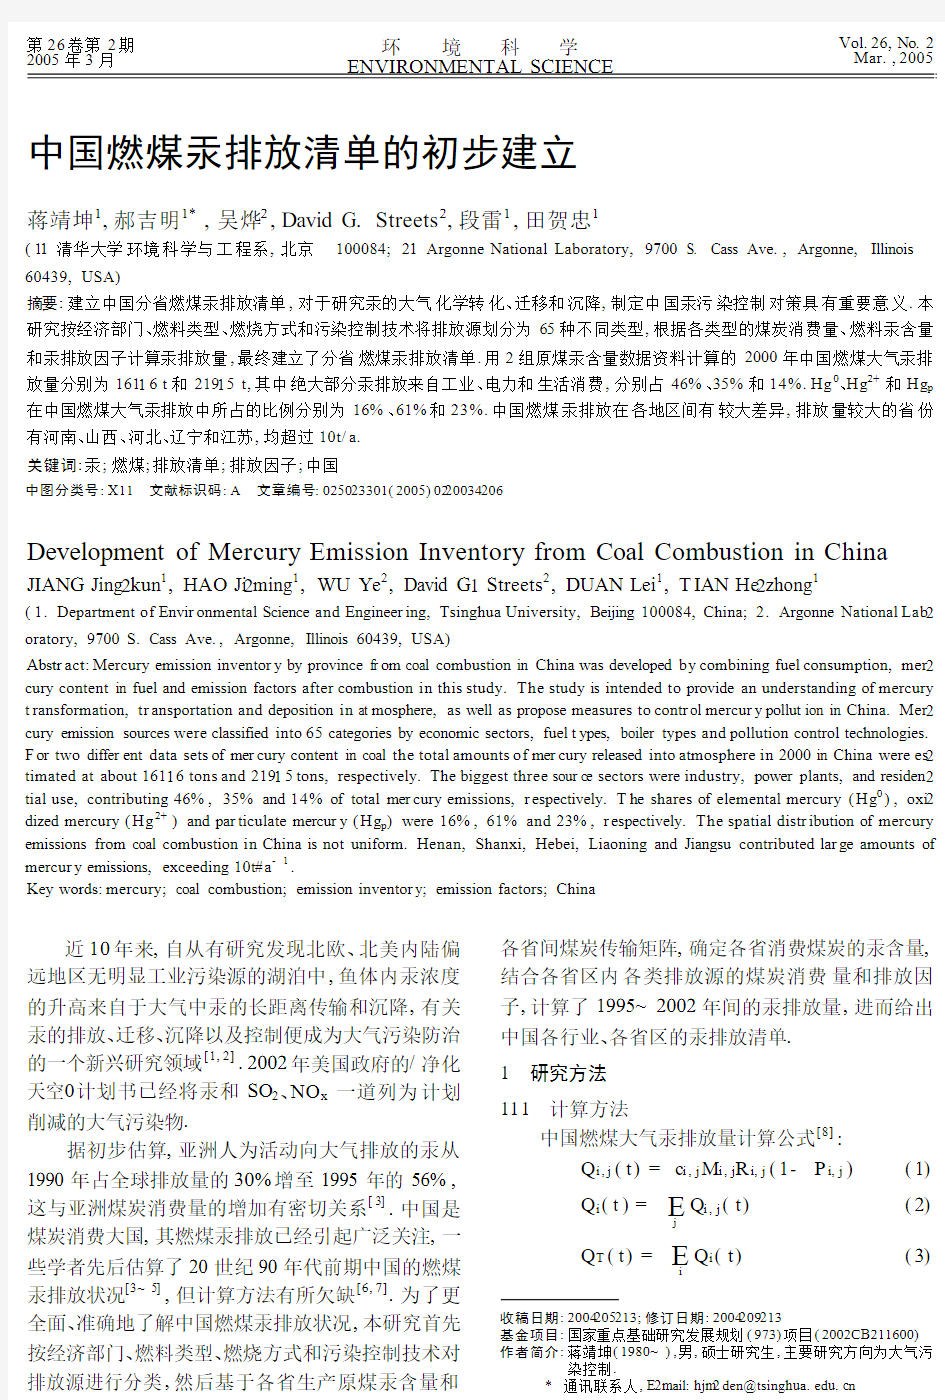 中国燃煤汞排放清单的初步建立